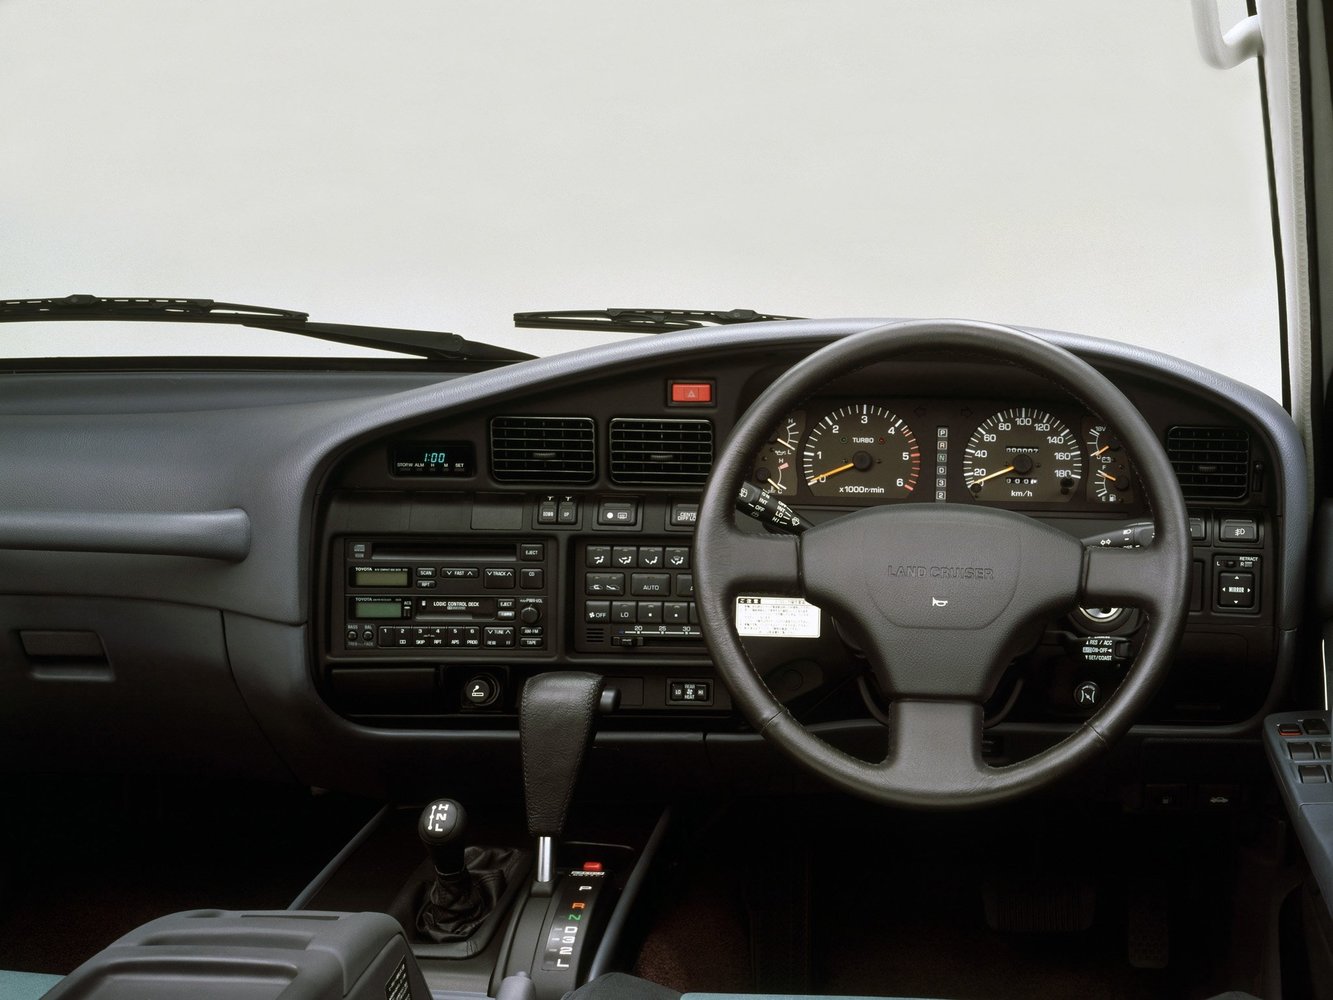 внедорожник Toyota Land Cruiser 1989 - 1994г выпуска модификация 4.0 AT (156 л.с.) 4×4